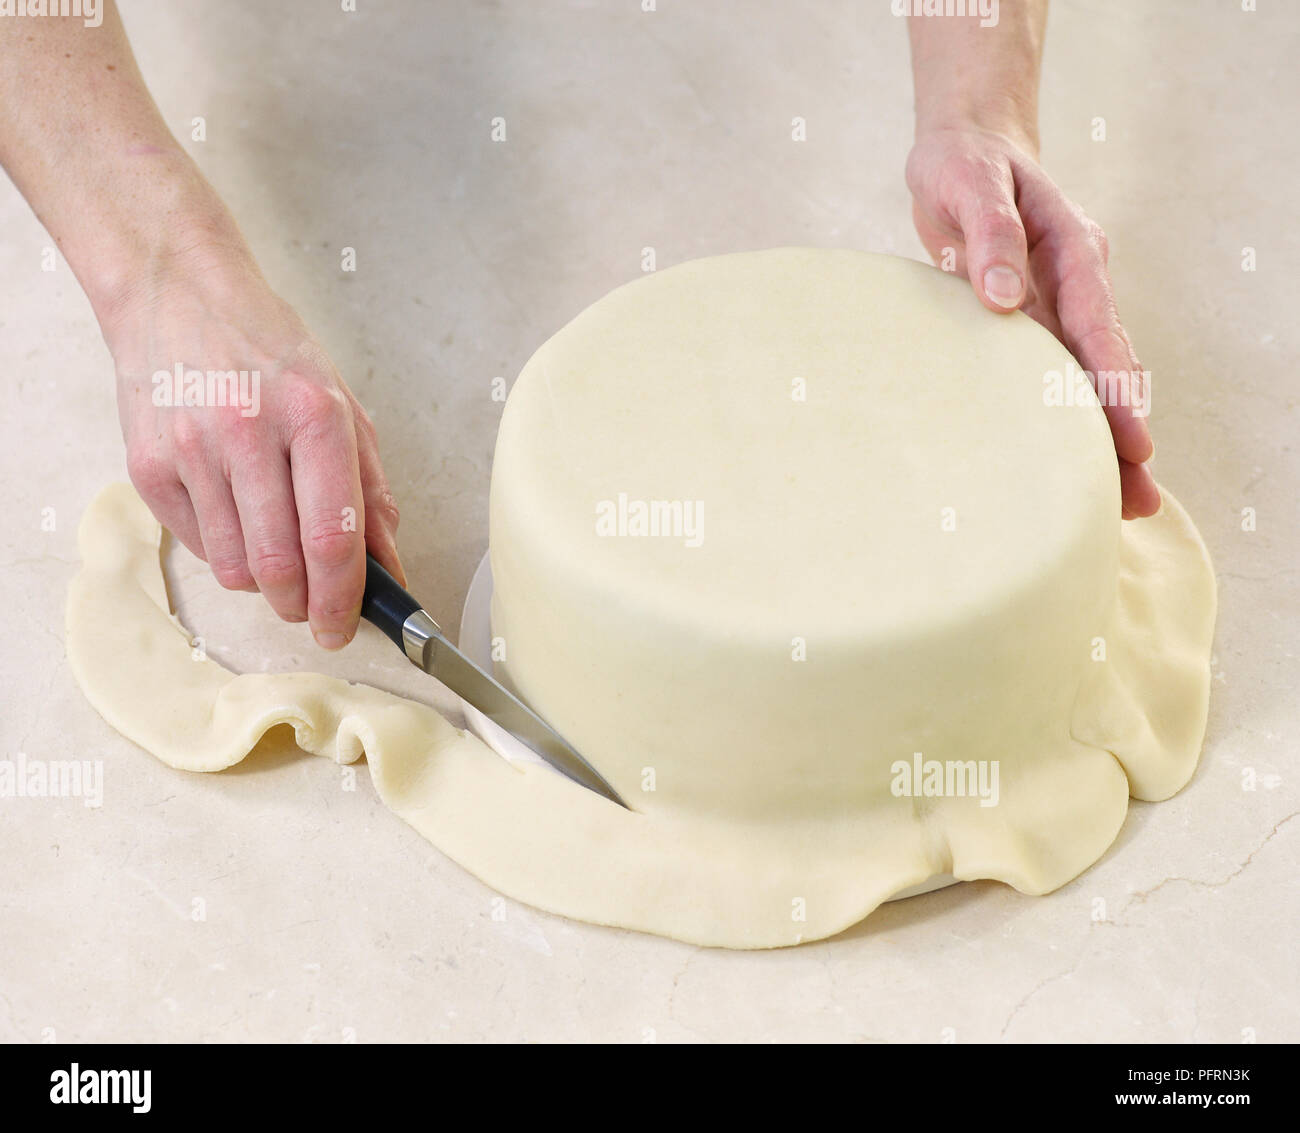 Gâteau de fruit recouvert de massepain, coupe manuelle l'excédent de pâte au fond du moule à gâteau, close-up Banque D'Images